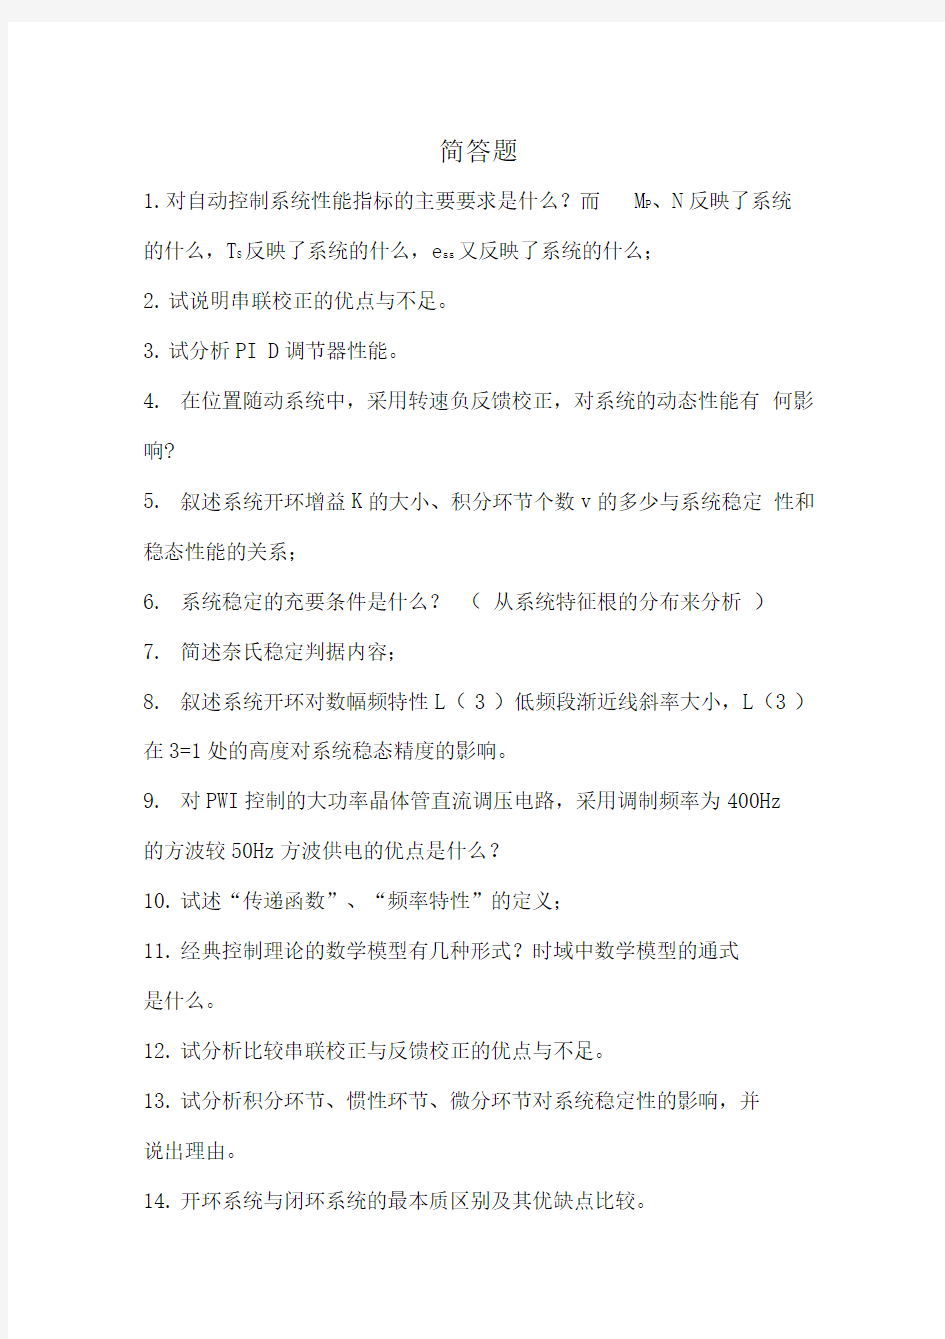 武汉理工大学机电工程学院复试控制工程总结